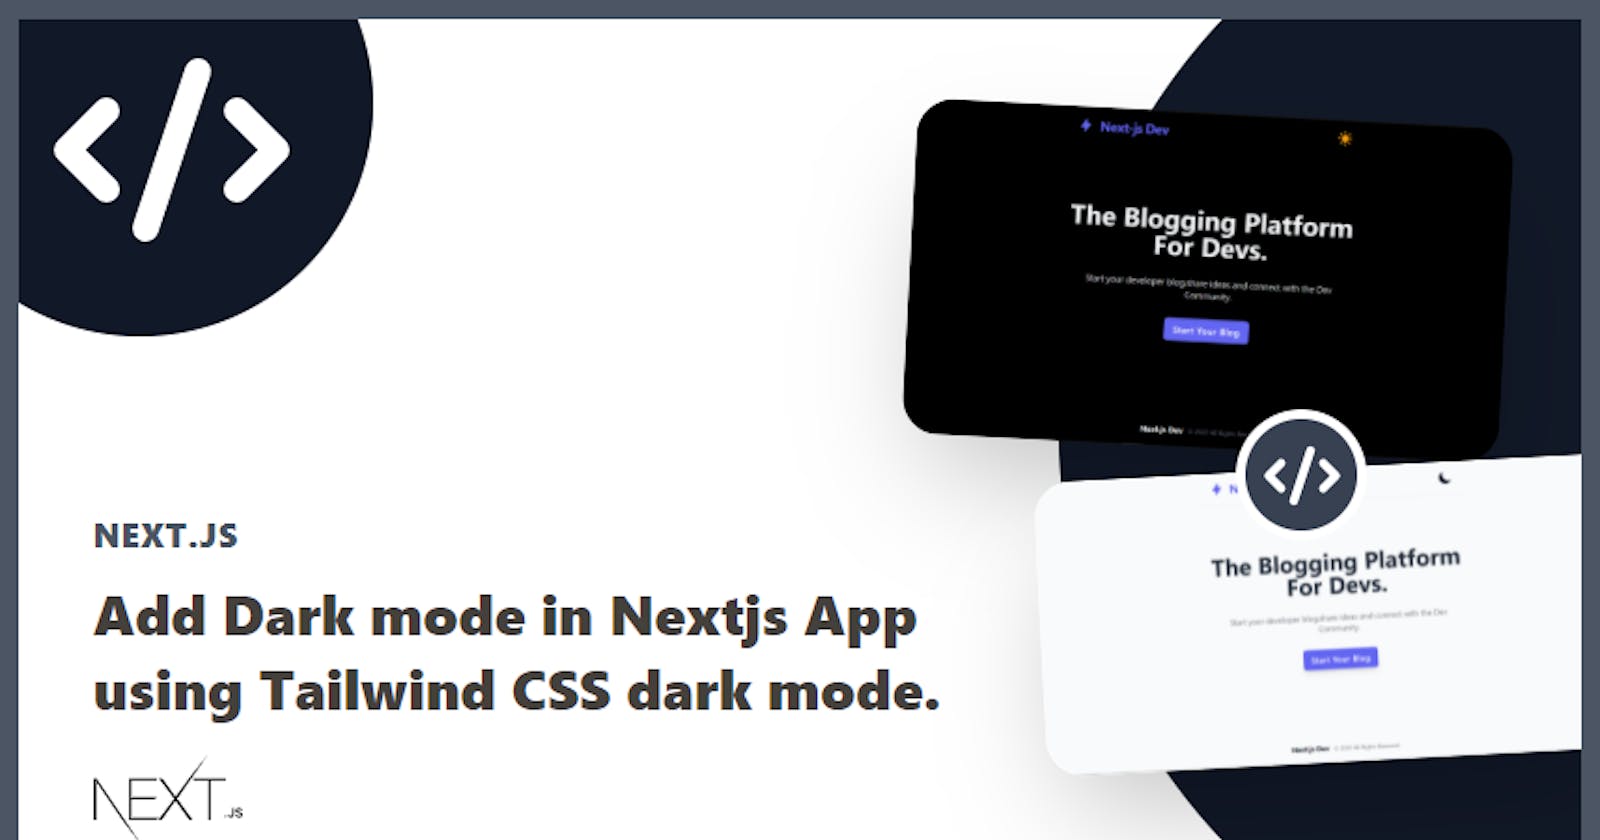 Add Dark mode in Nextjs App using Tailwind CSS Dark Mode.